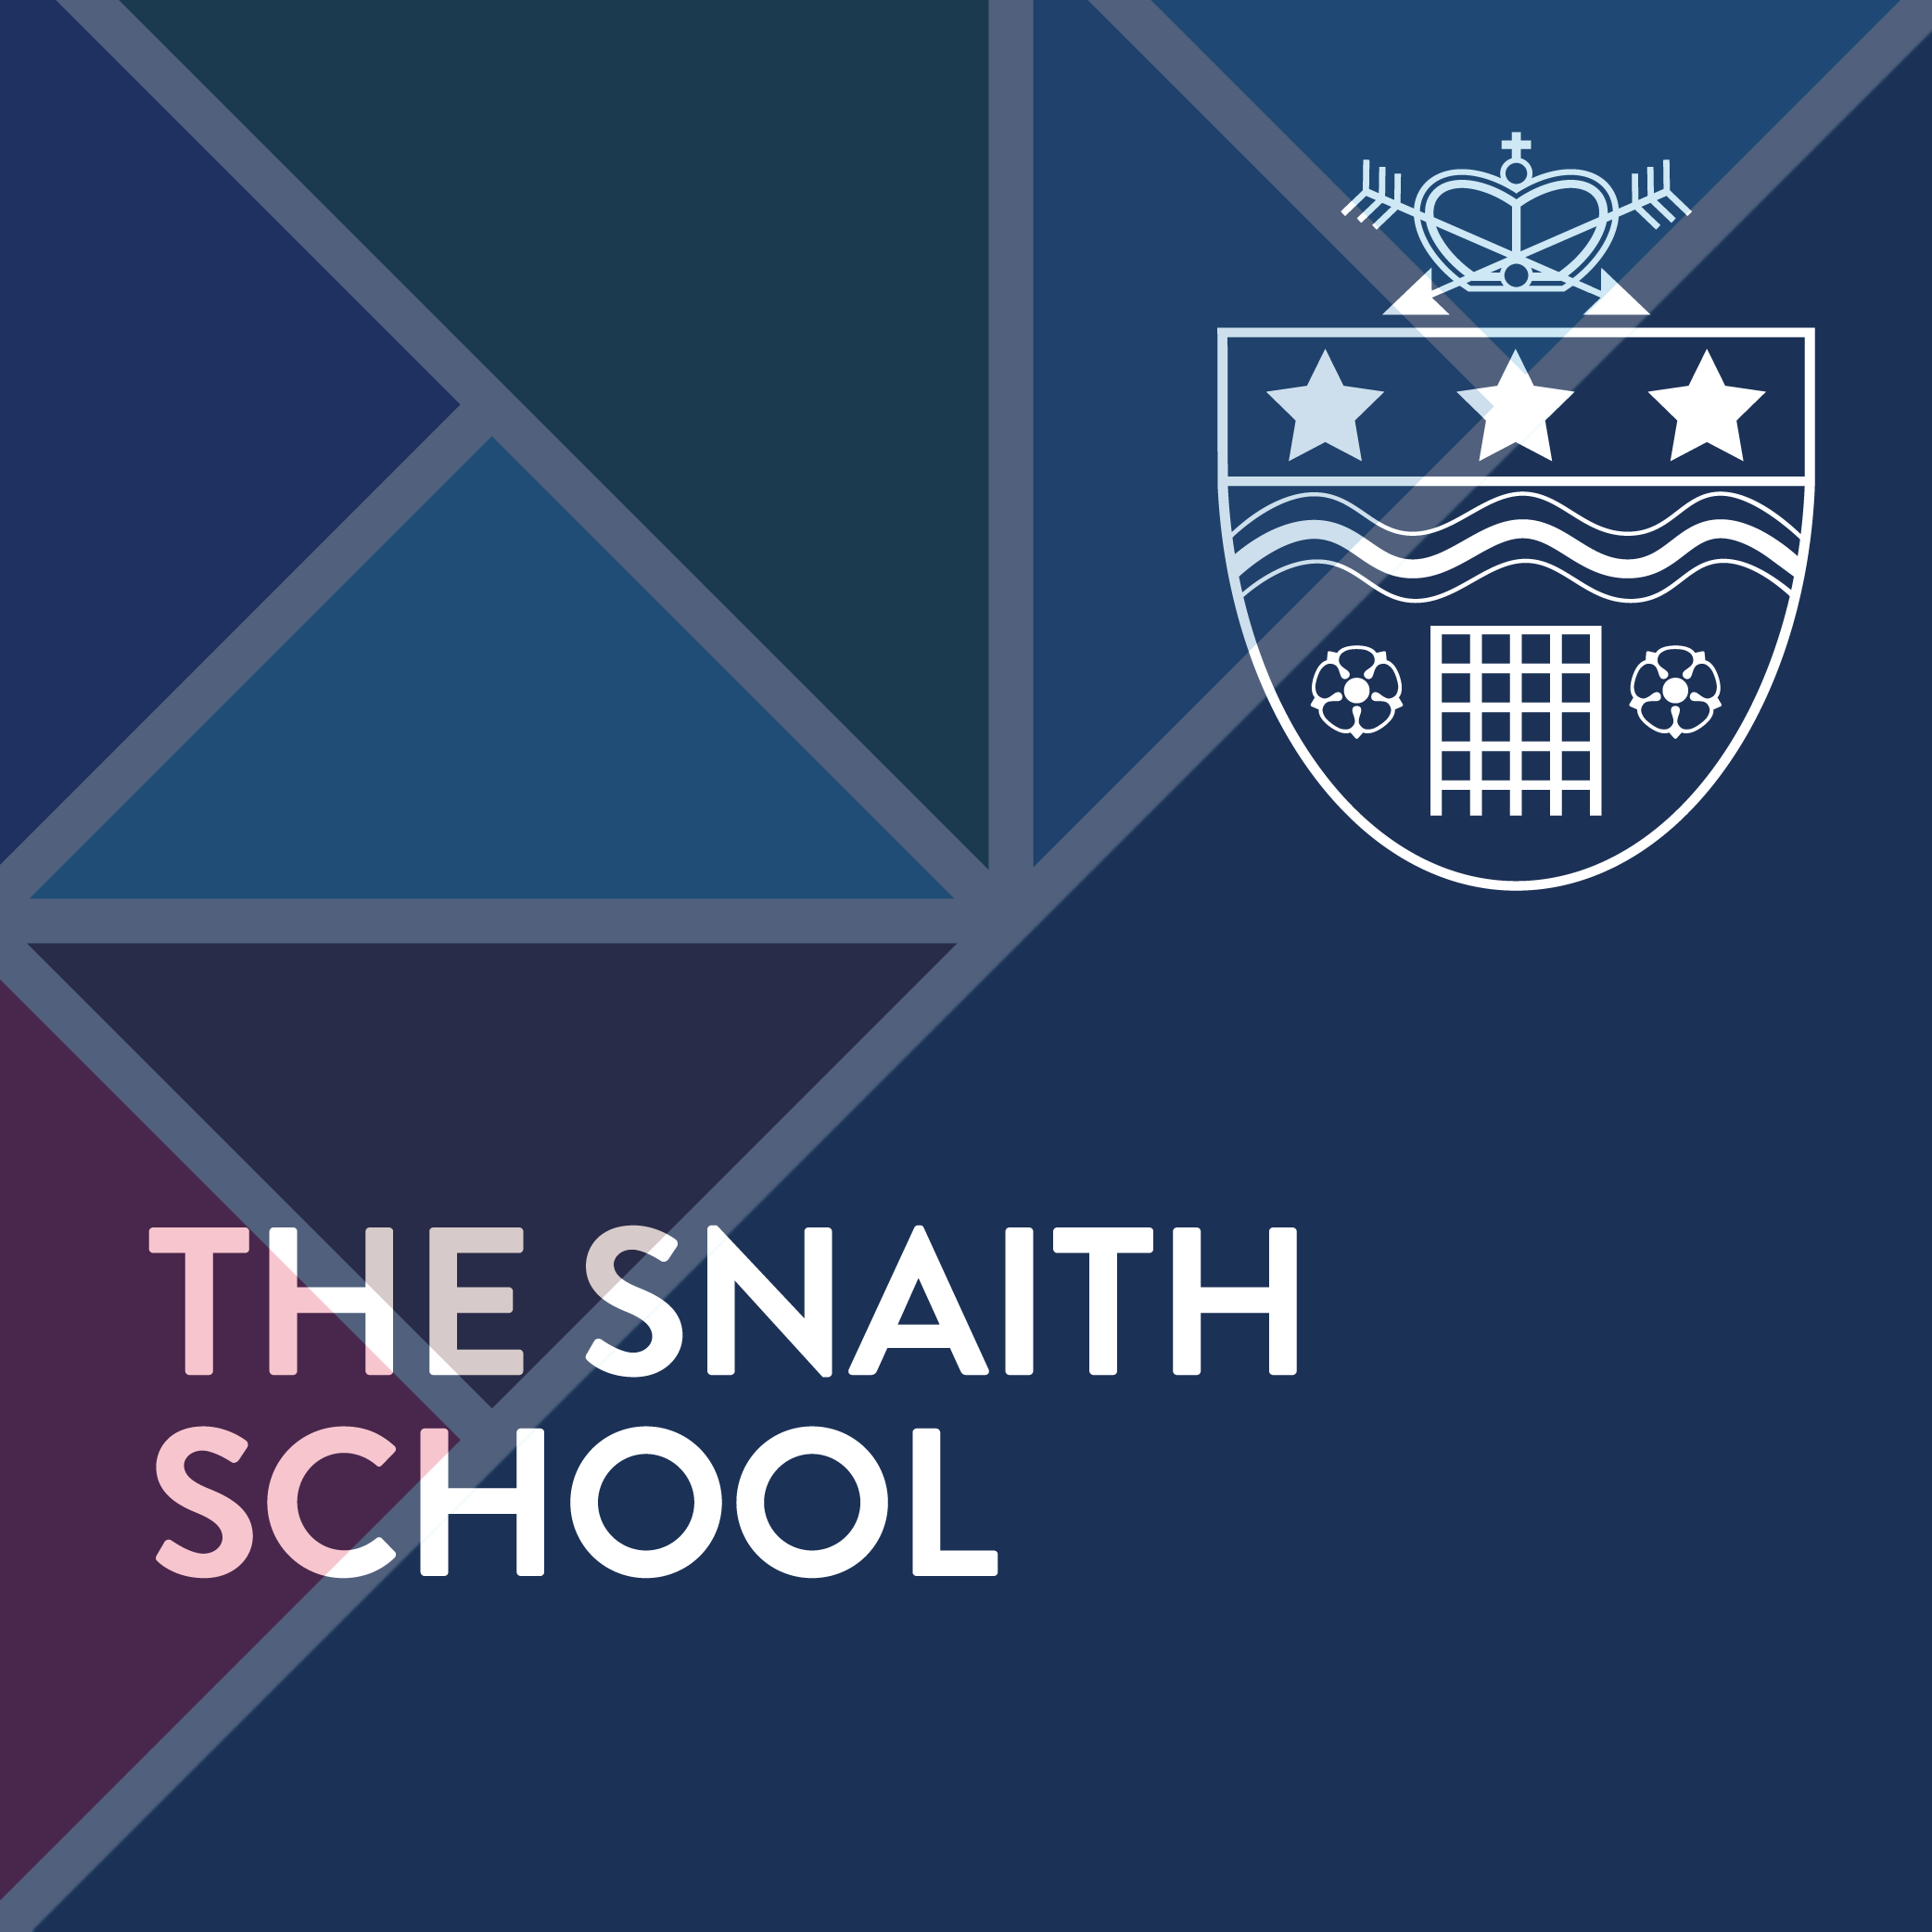 The Snaith School